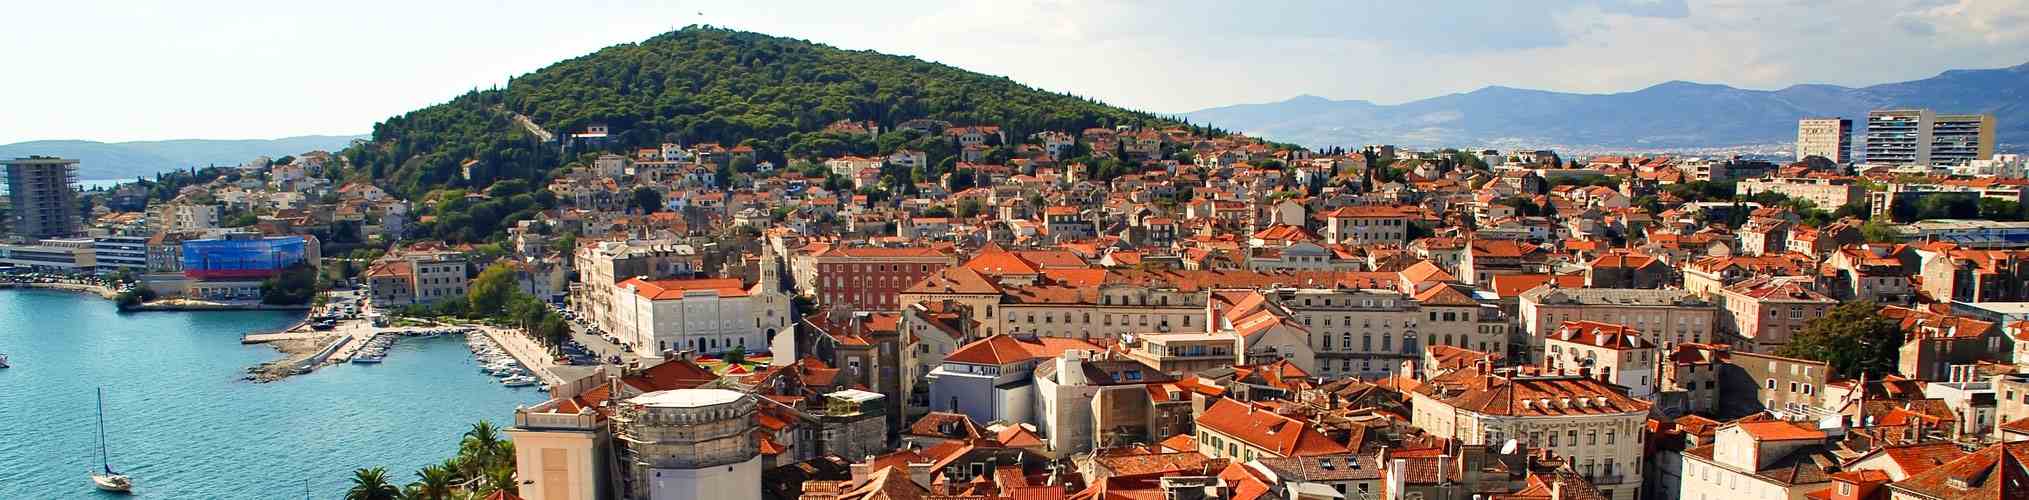 Split, Croatia: panoramic view